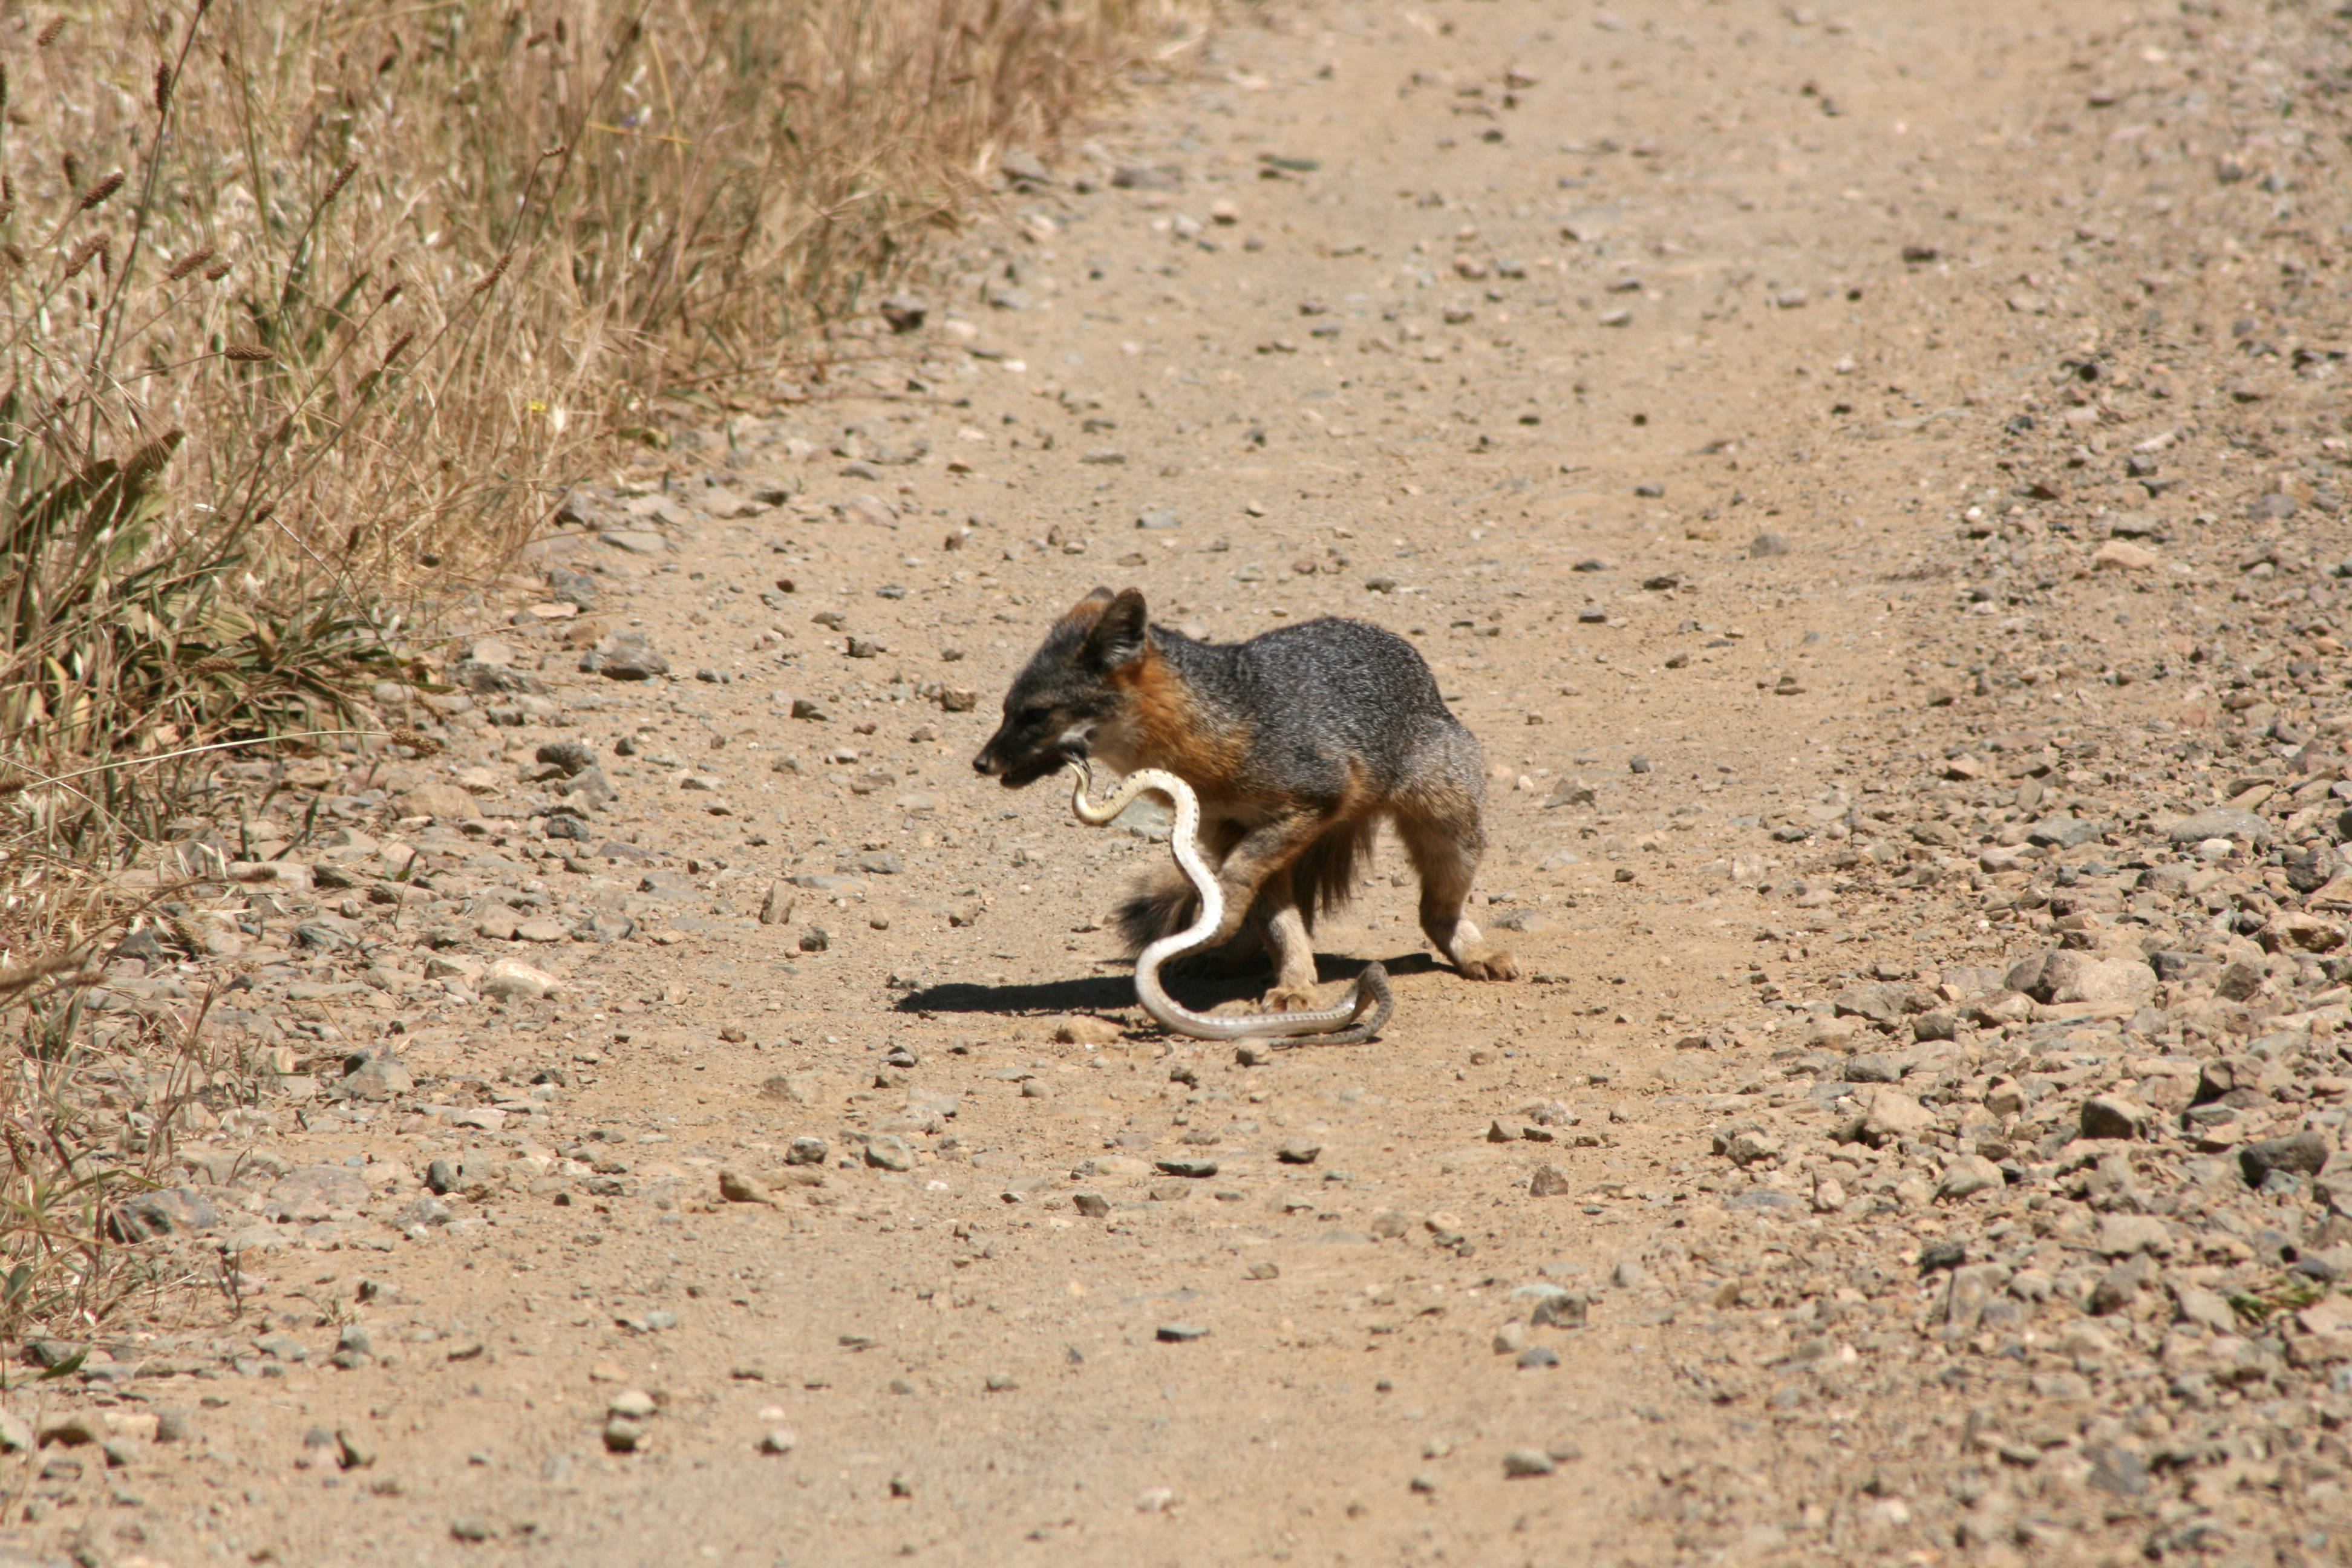 Island Fox eating Gopher Snake